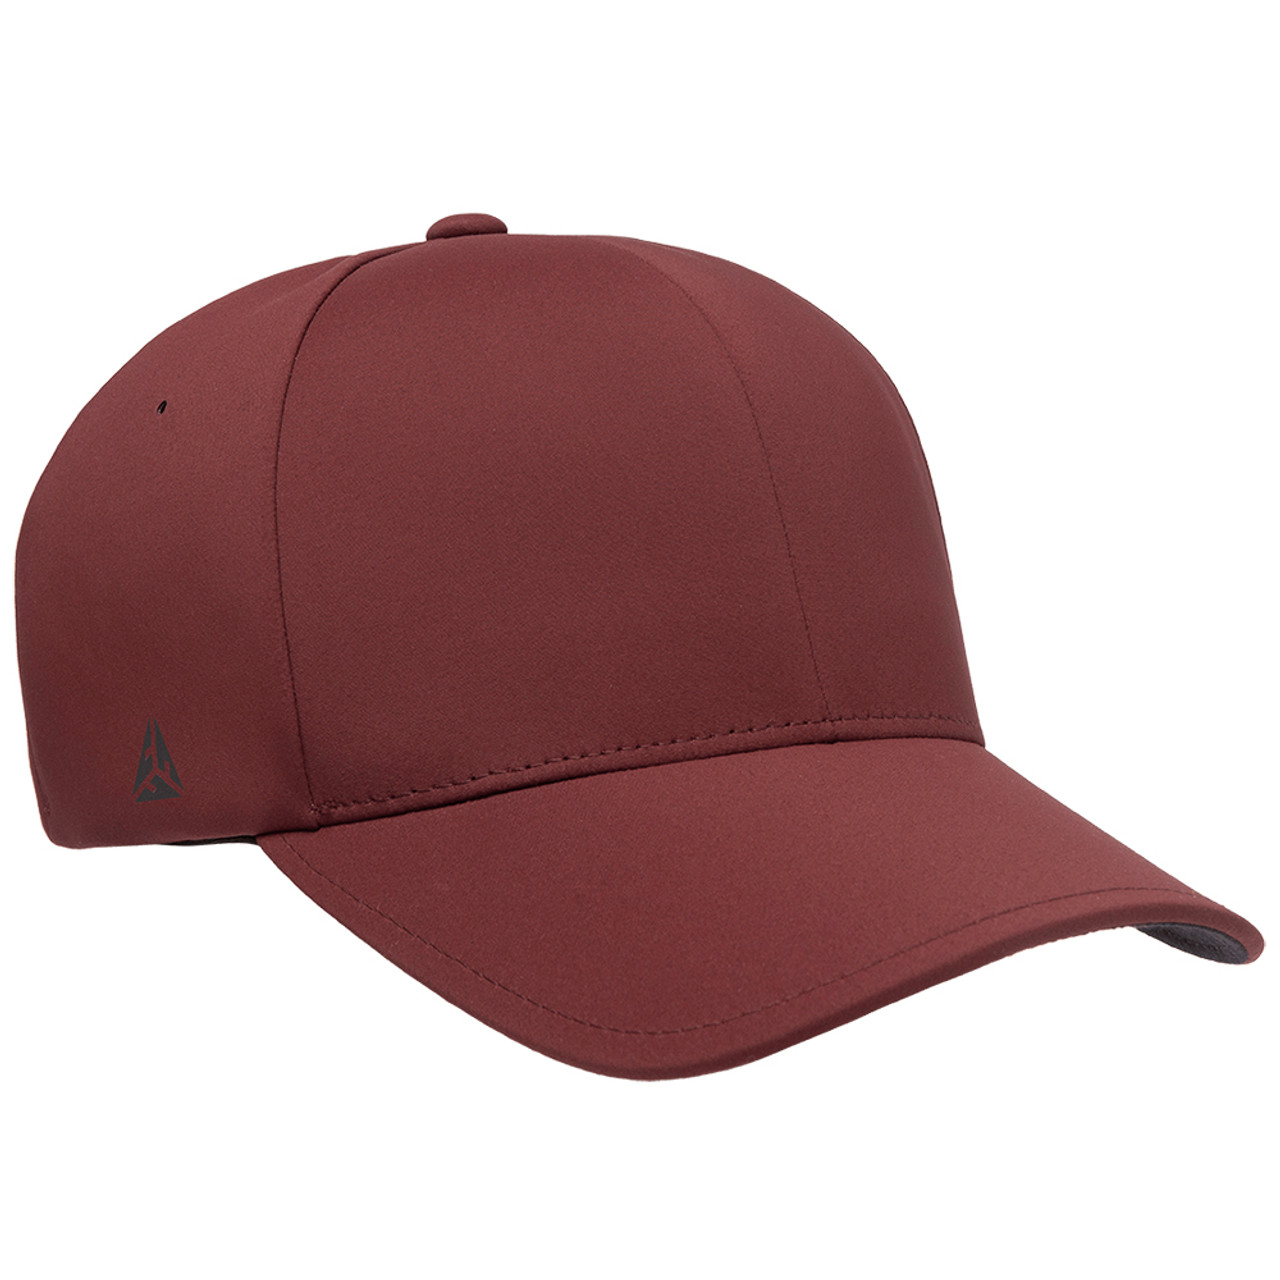 Flexfit Delta Cap - One Dozen | The Jac Hat